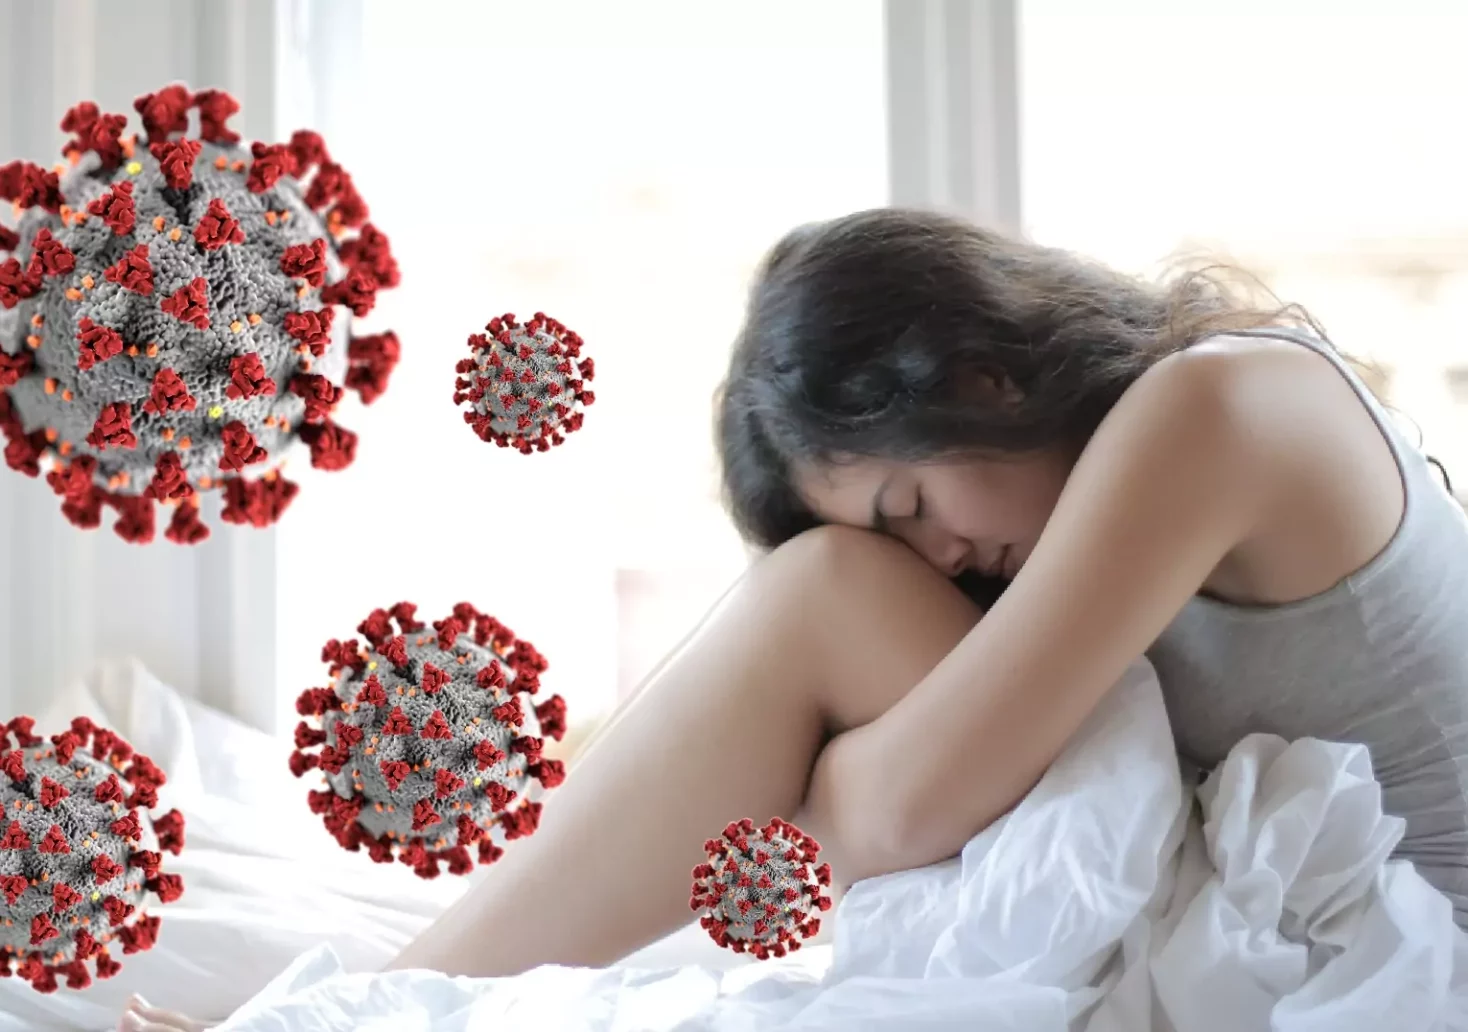 Foto auf 5 min.at zeigt eine Bildmontage von einer Frau, die krank im Bett liegt und von einem Virus.